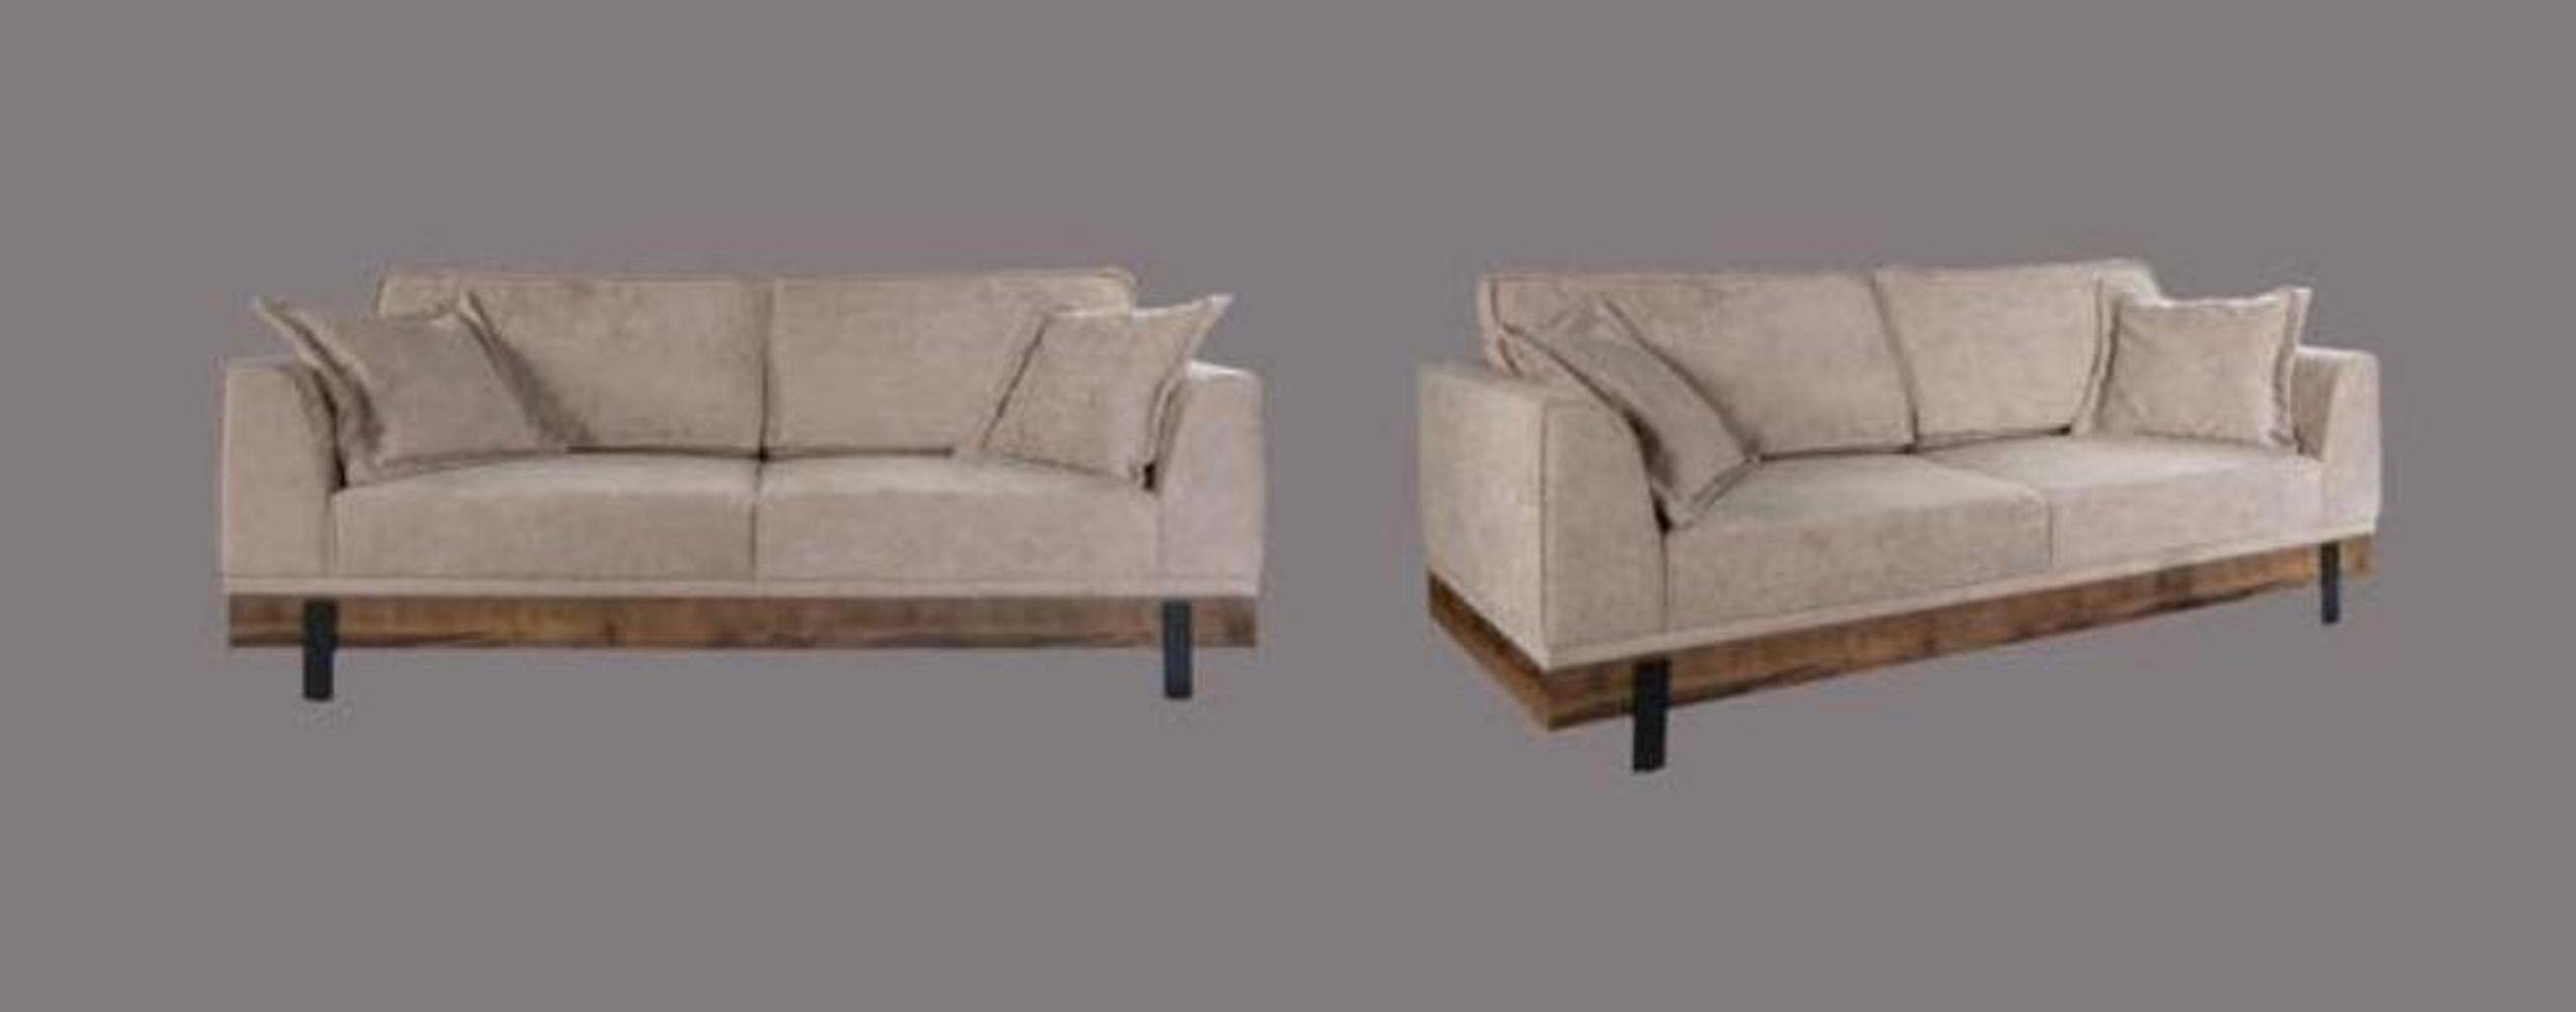 Textil Sitzer Polster Sofa, Couch Sofas Sofa Wohnzimmer Beige 3 JVmoebel